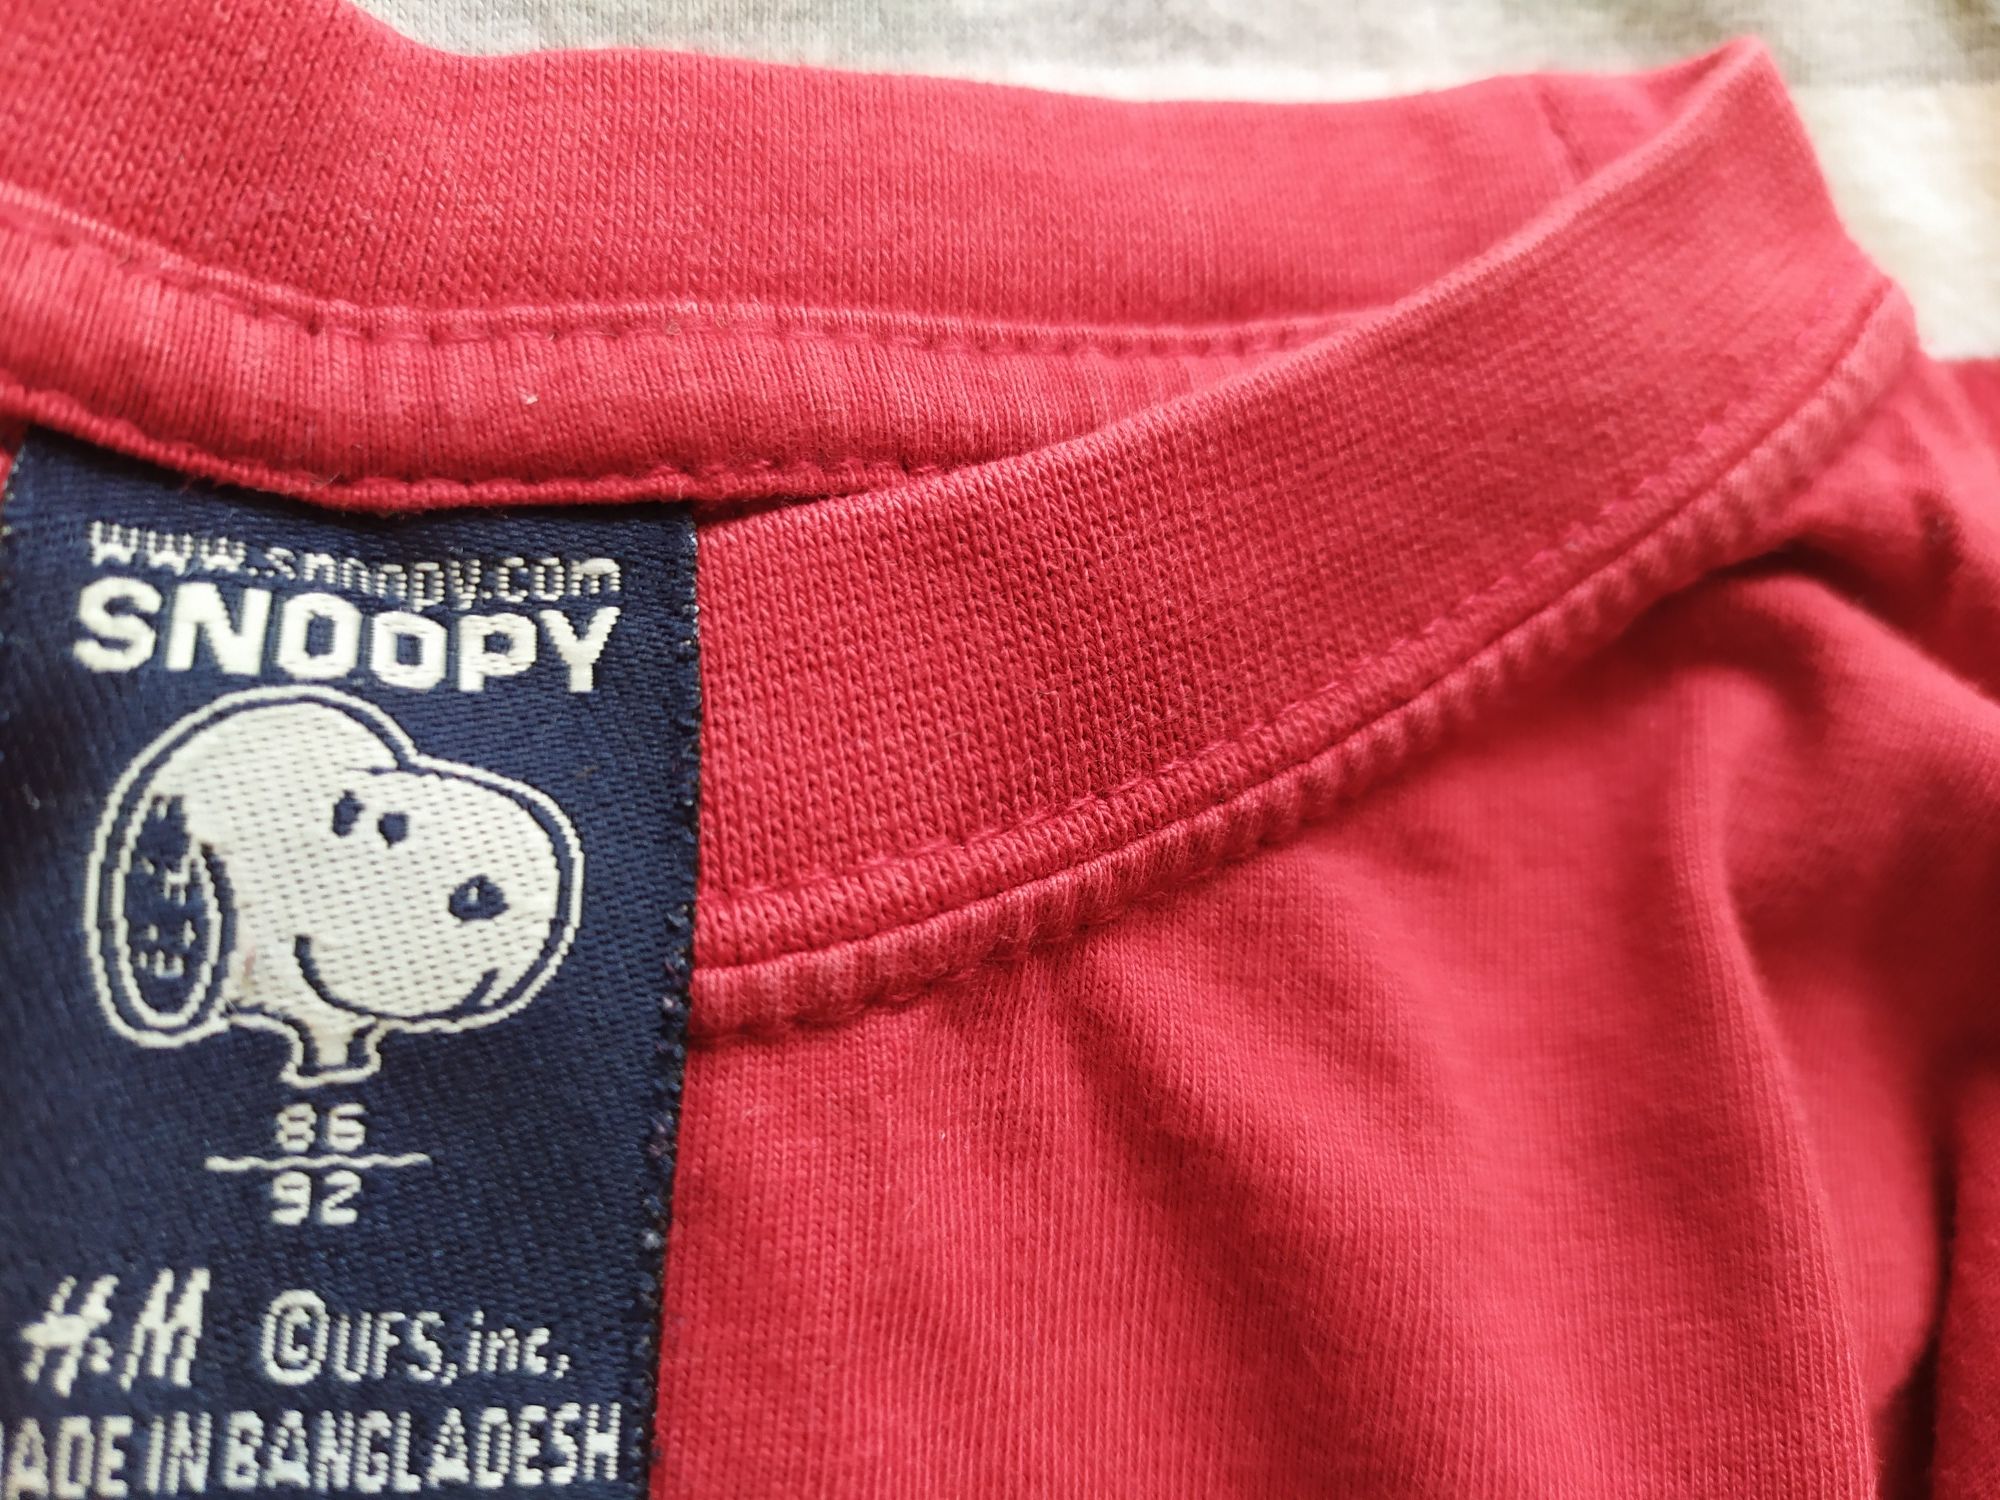 Bluzy H&M rozmiar 86 czerwone Snoopy długi rękaw